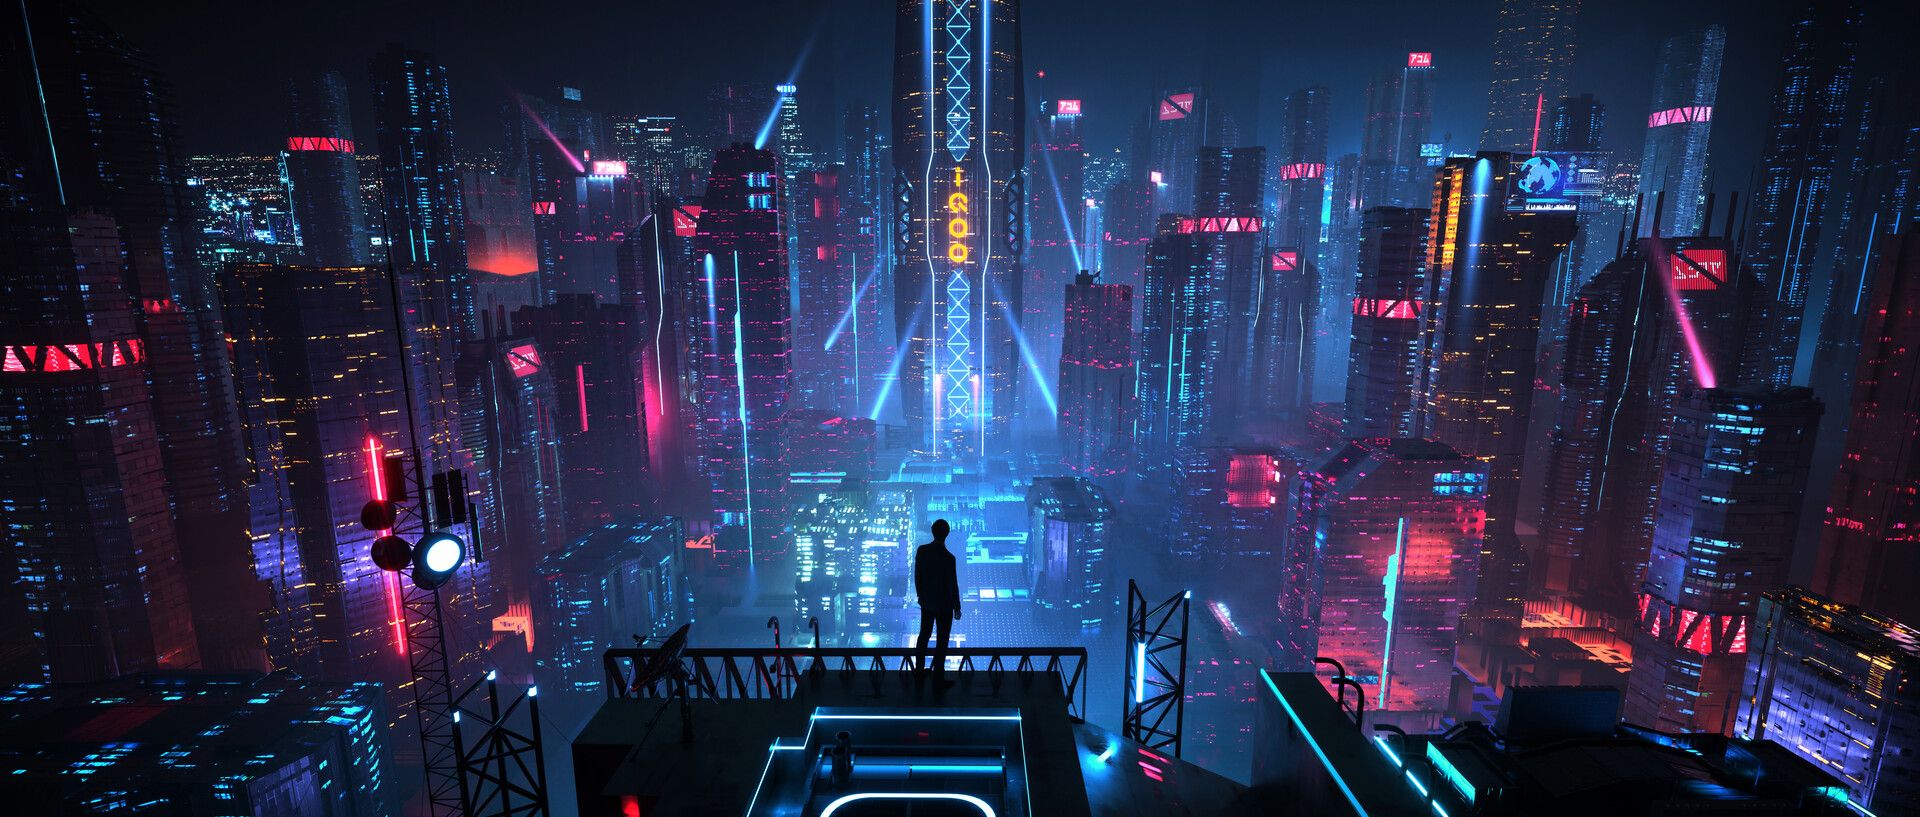 Sự kết hợp giữa những cảnh quan đô thị và công nghệ tiên tiến trong bức hình nền Cyberpunk city desktop này sẽ khiến bạn cảm thấy như mình đang được sống trong một thế giới tương lai không xa. Hãy nhấp vào hình ảnh và khám phá cảm giác hưng phấn đó.